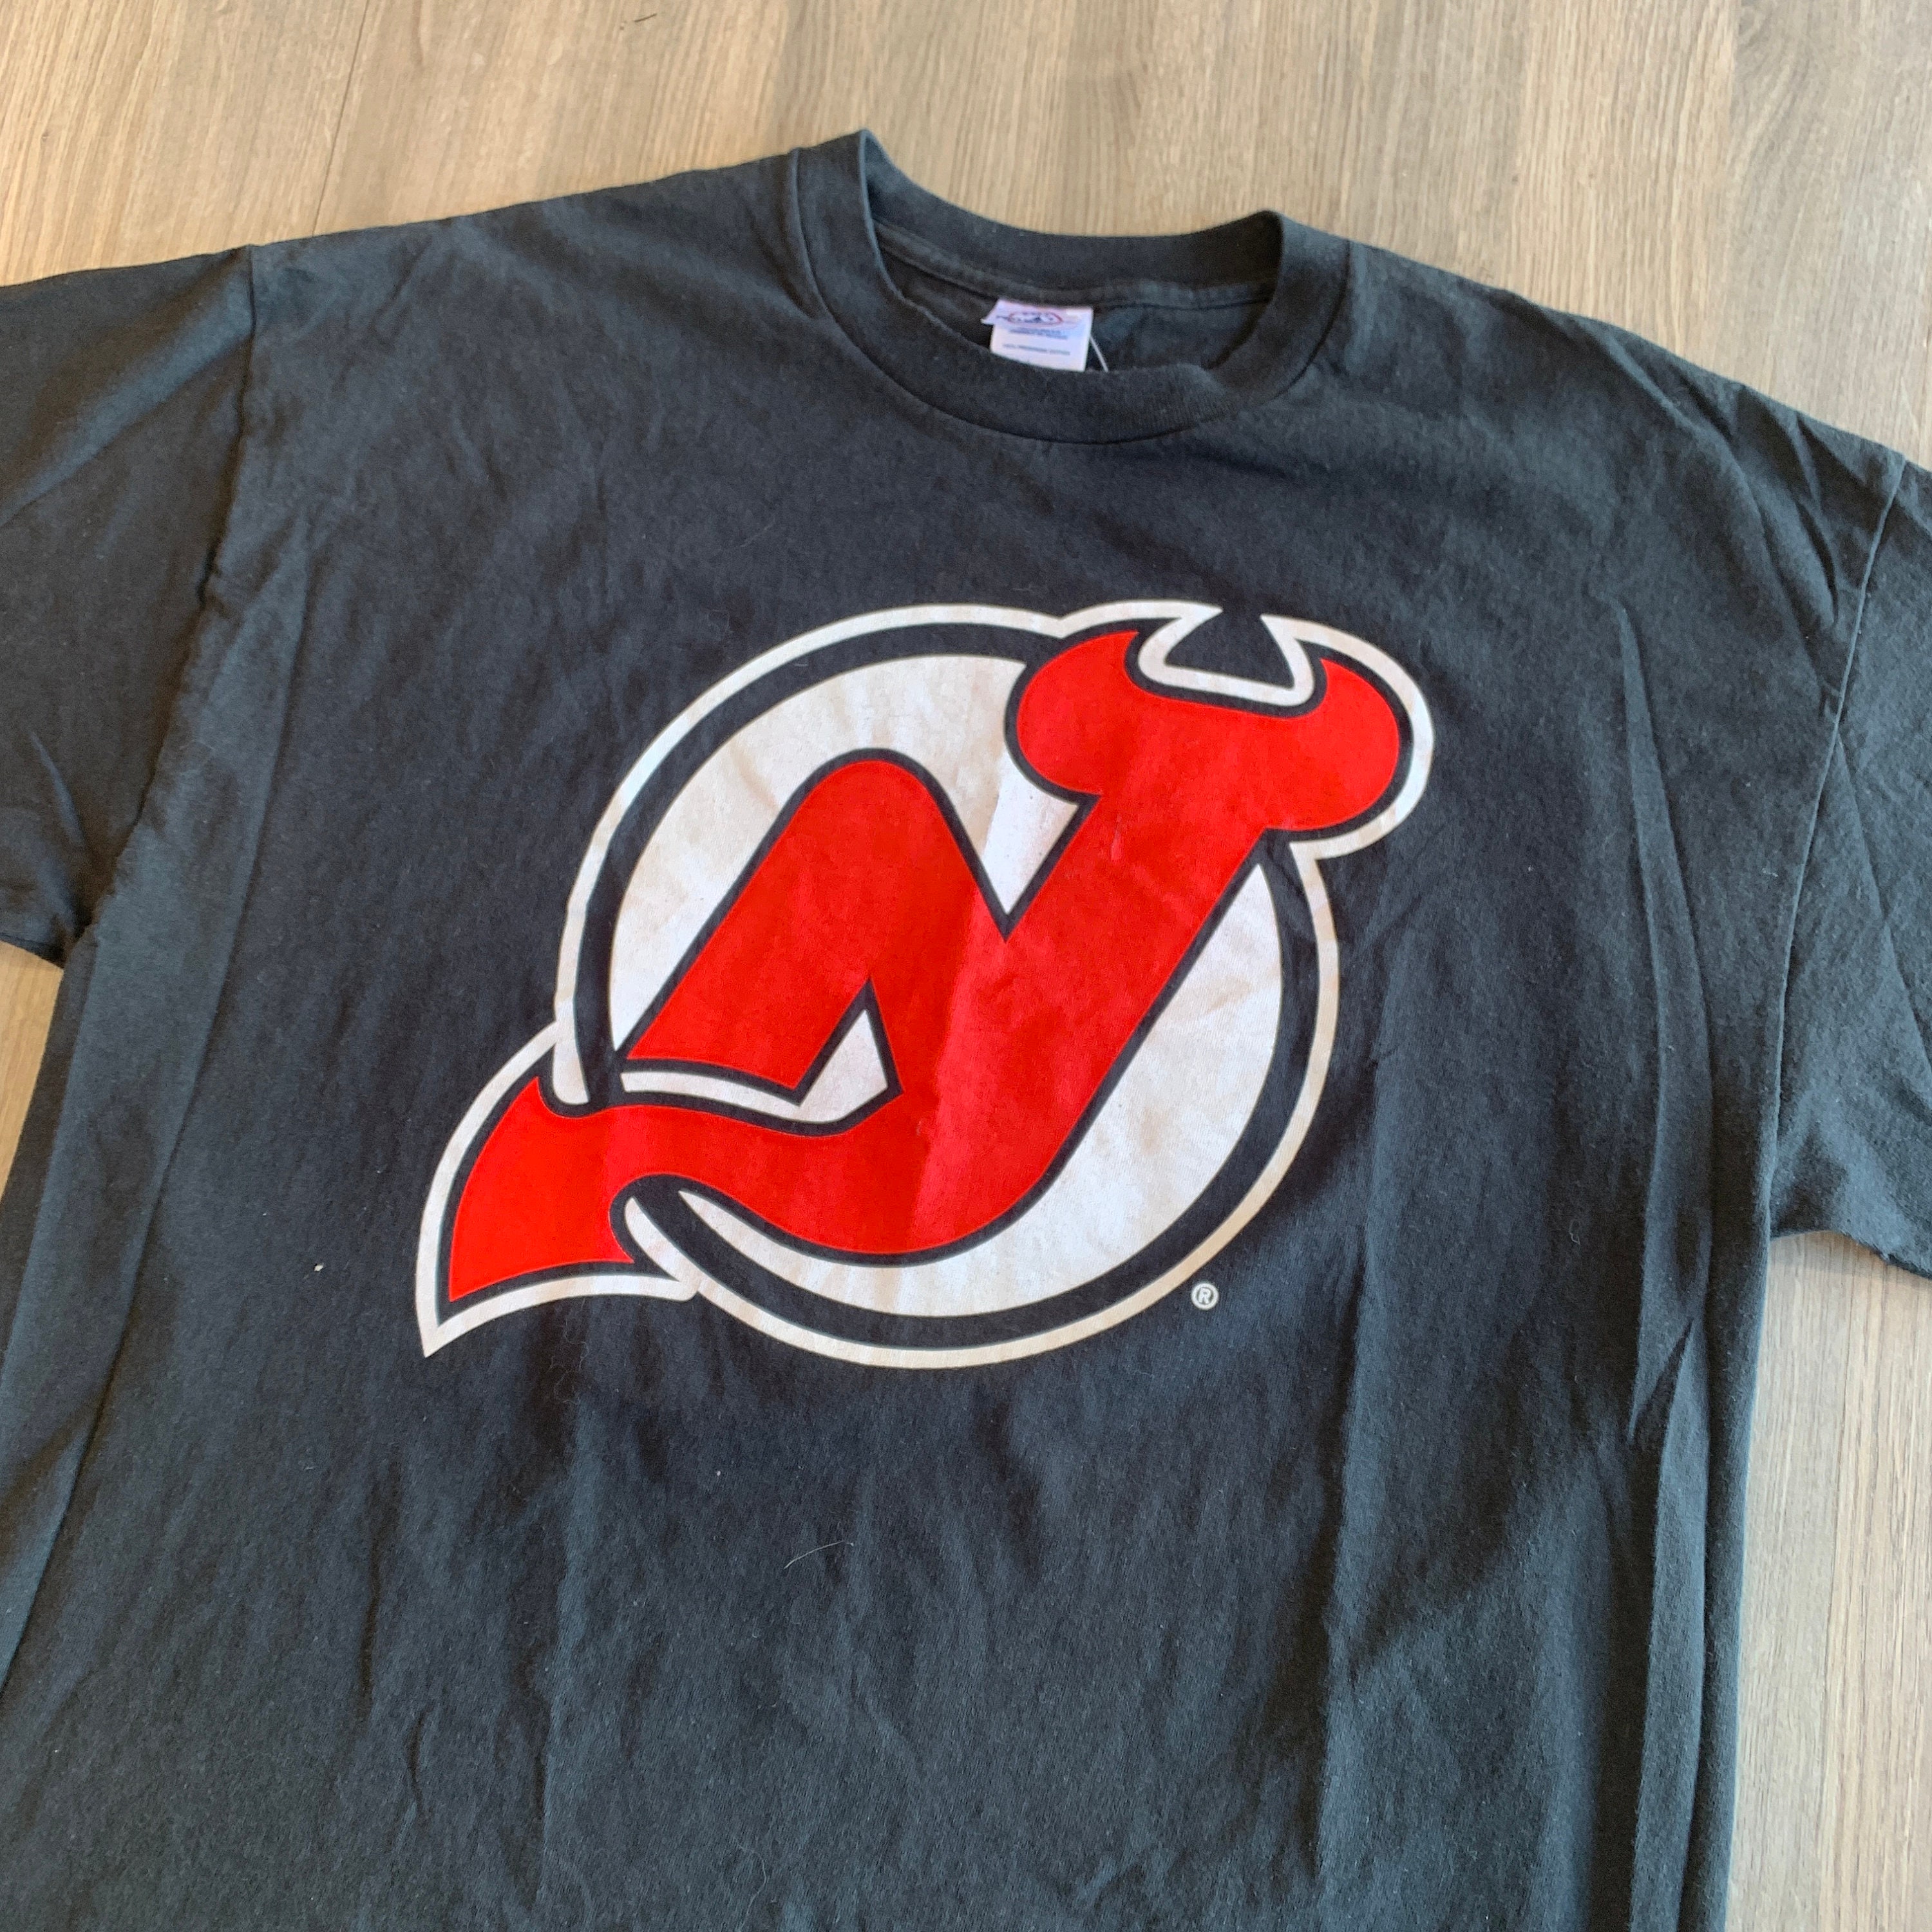 New Jersey Devils NHL Vintage Twins Enterprise Vintage 90s